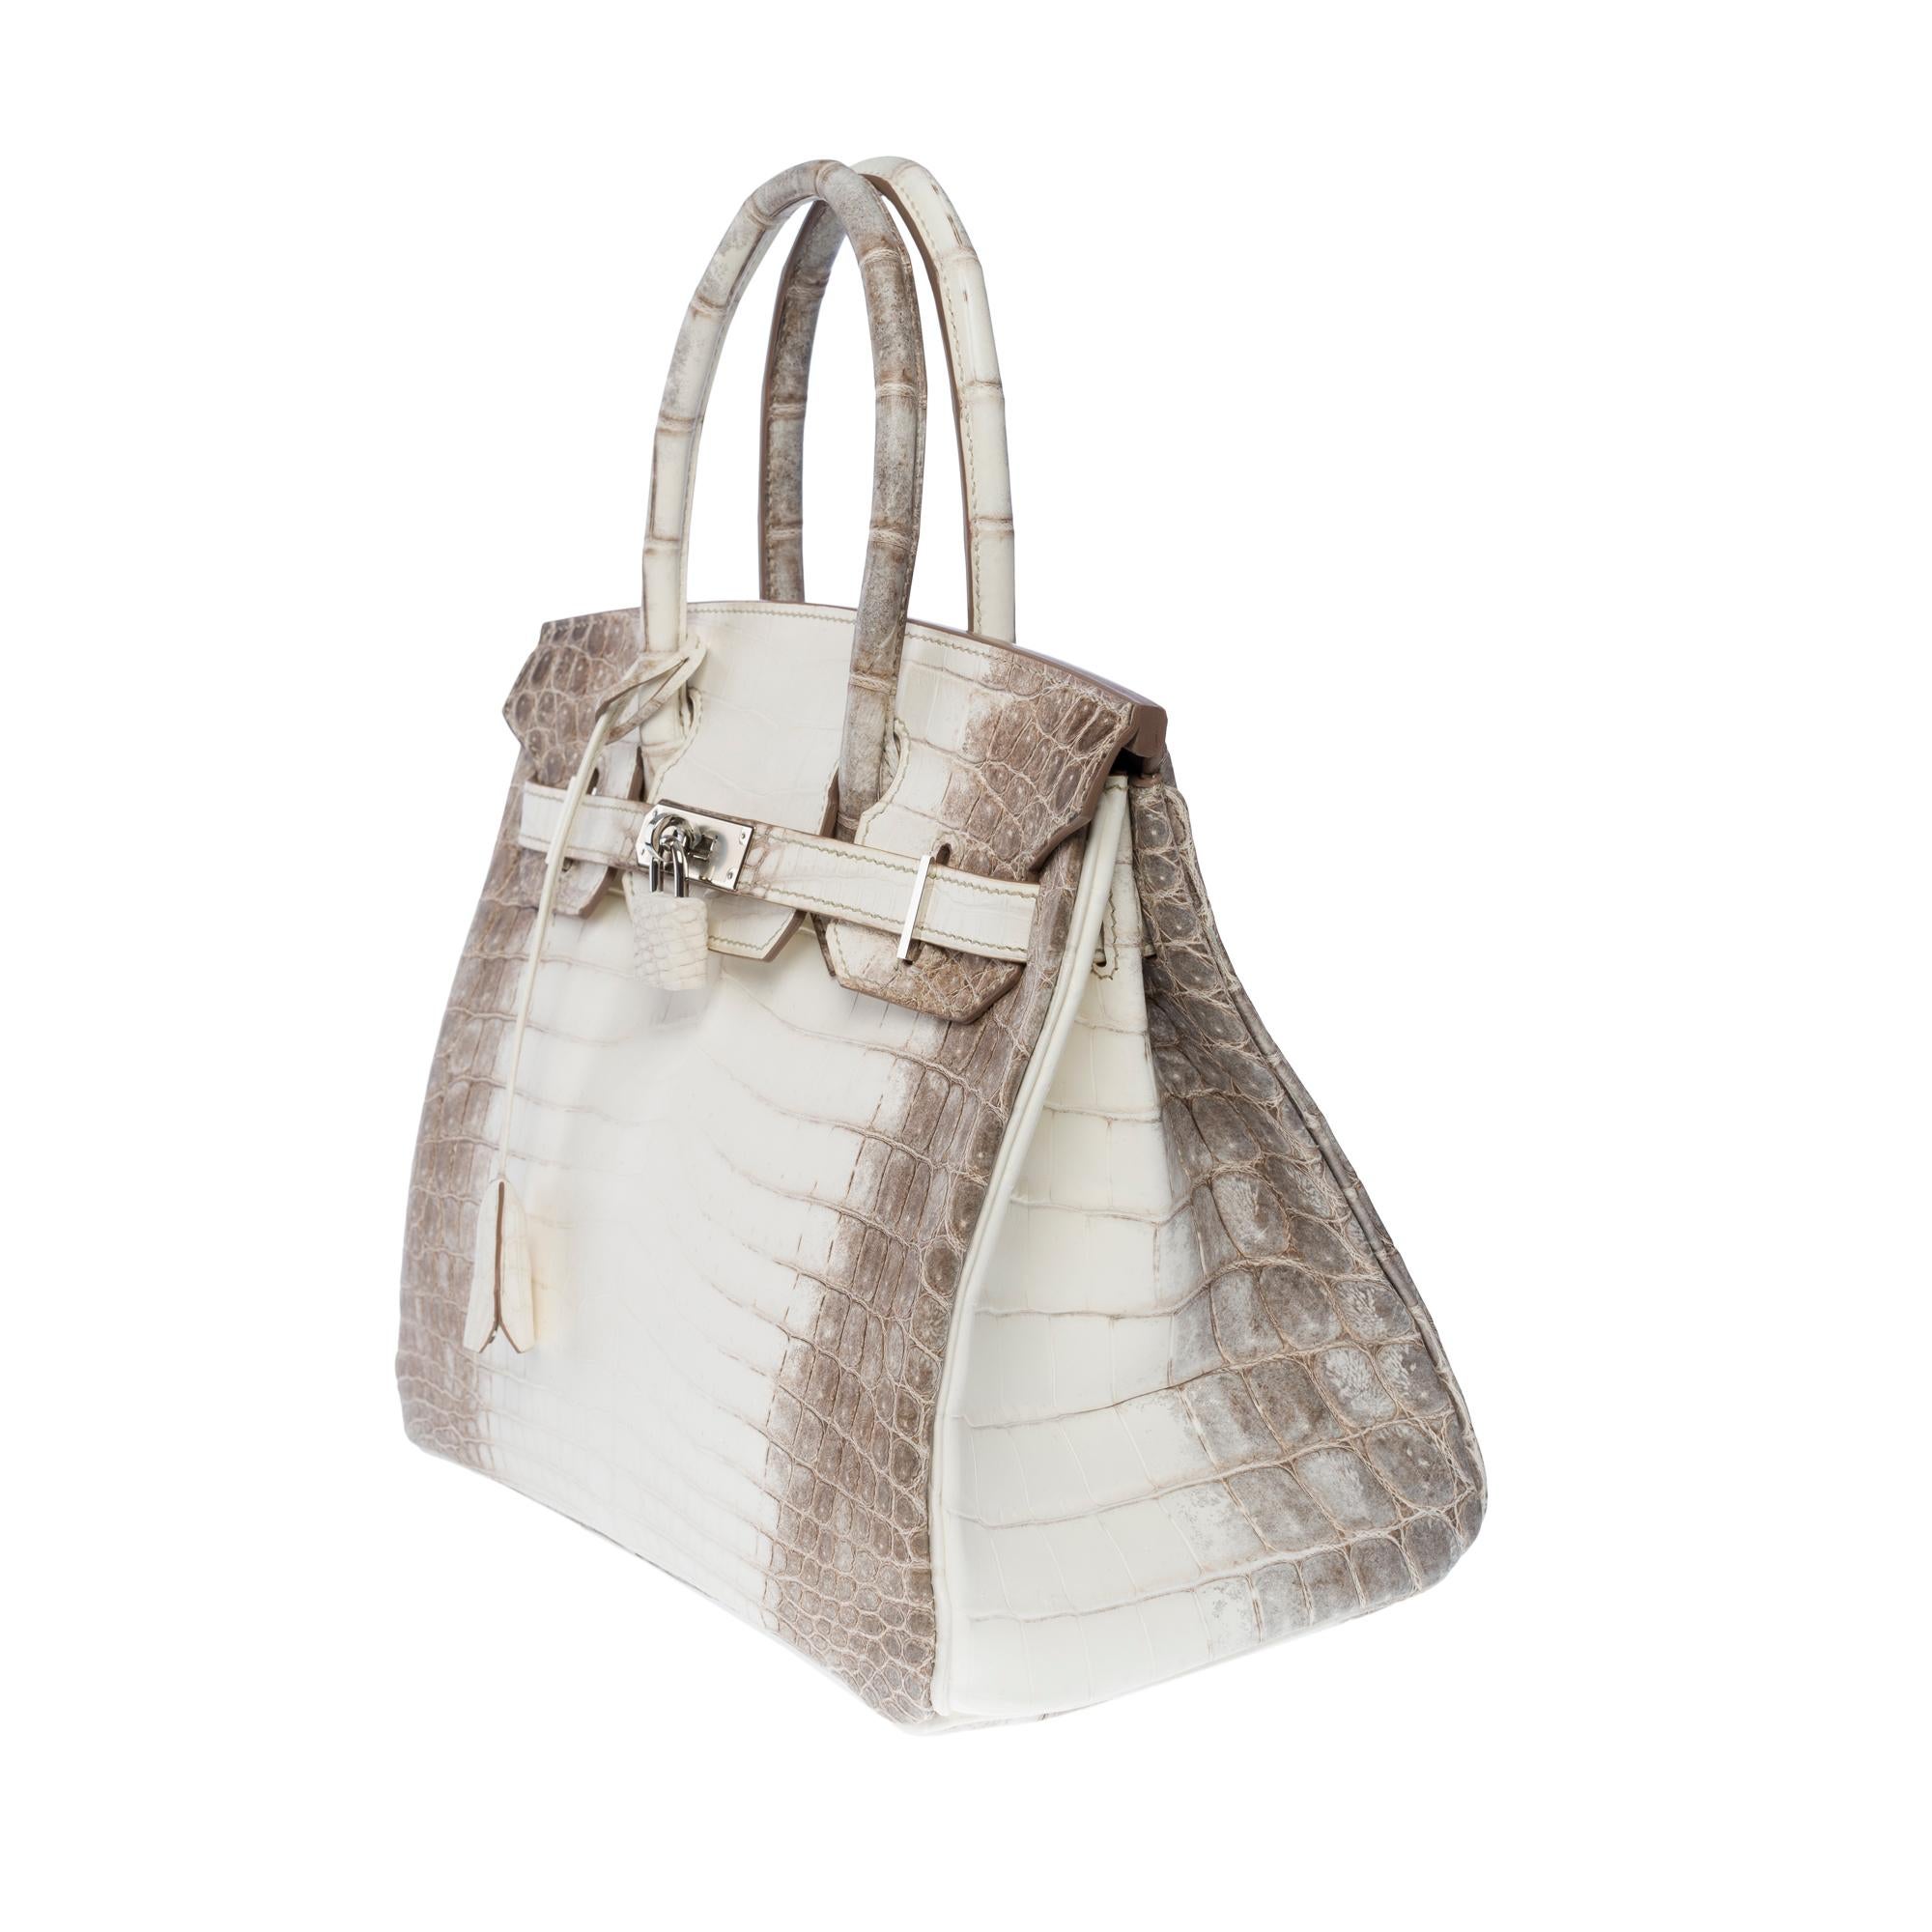 Seltene neue Hermès Birkin 30 Himalaya Handtasche in weißem Nilkrokodilleder, SHW Damen